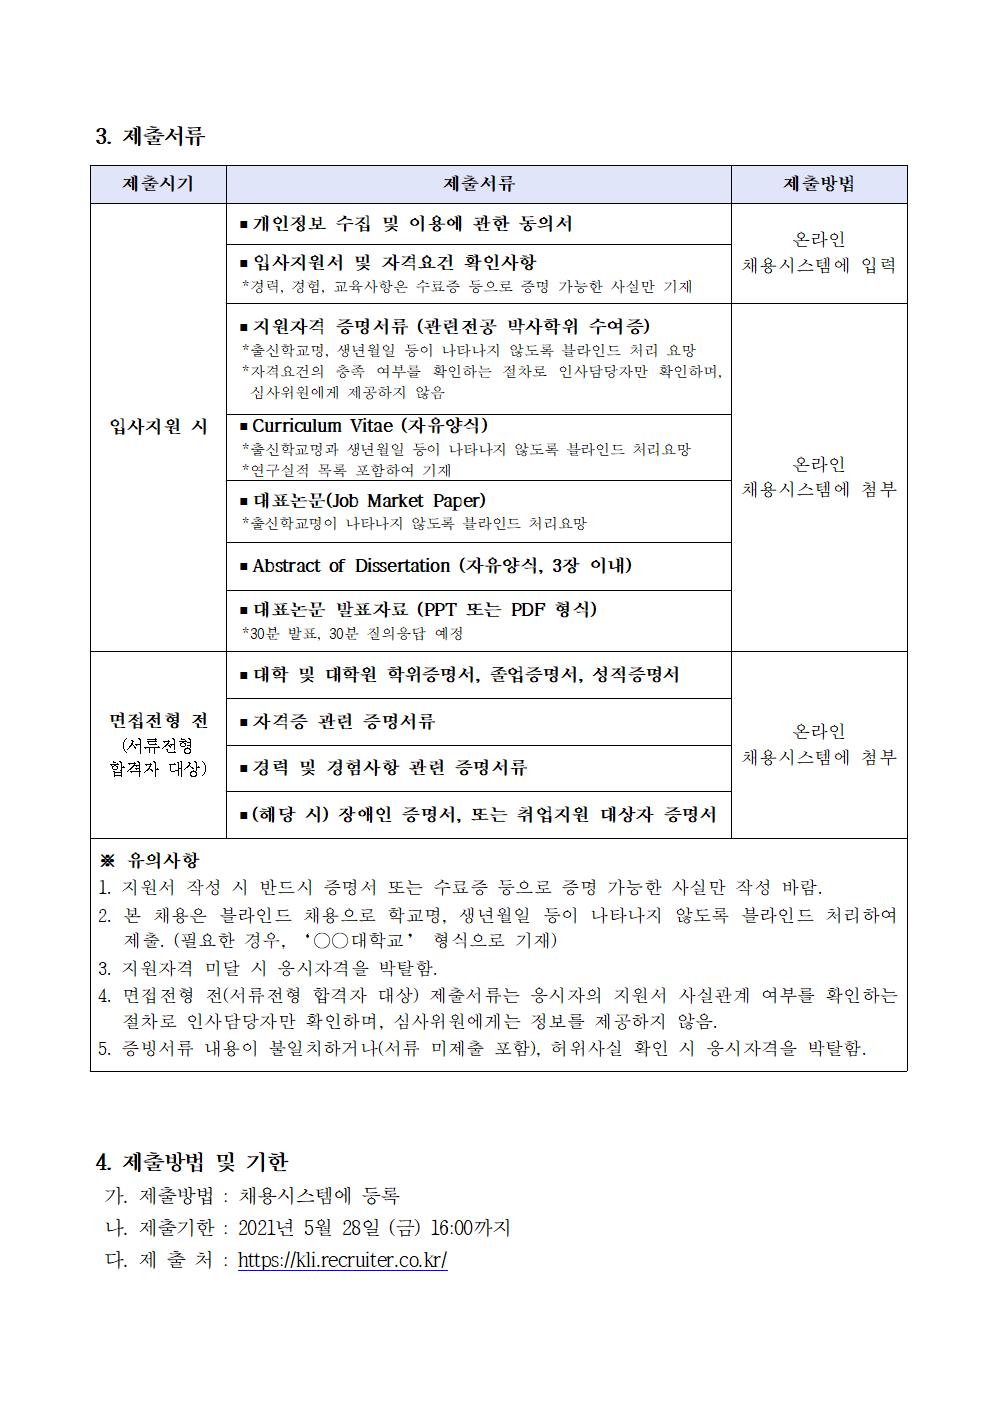 첨부파일 2021-04호 초빙연구위원 채용 공고문.pdf  참고